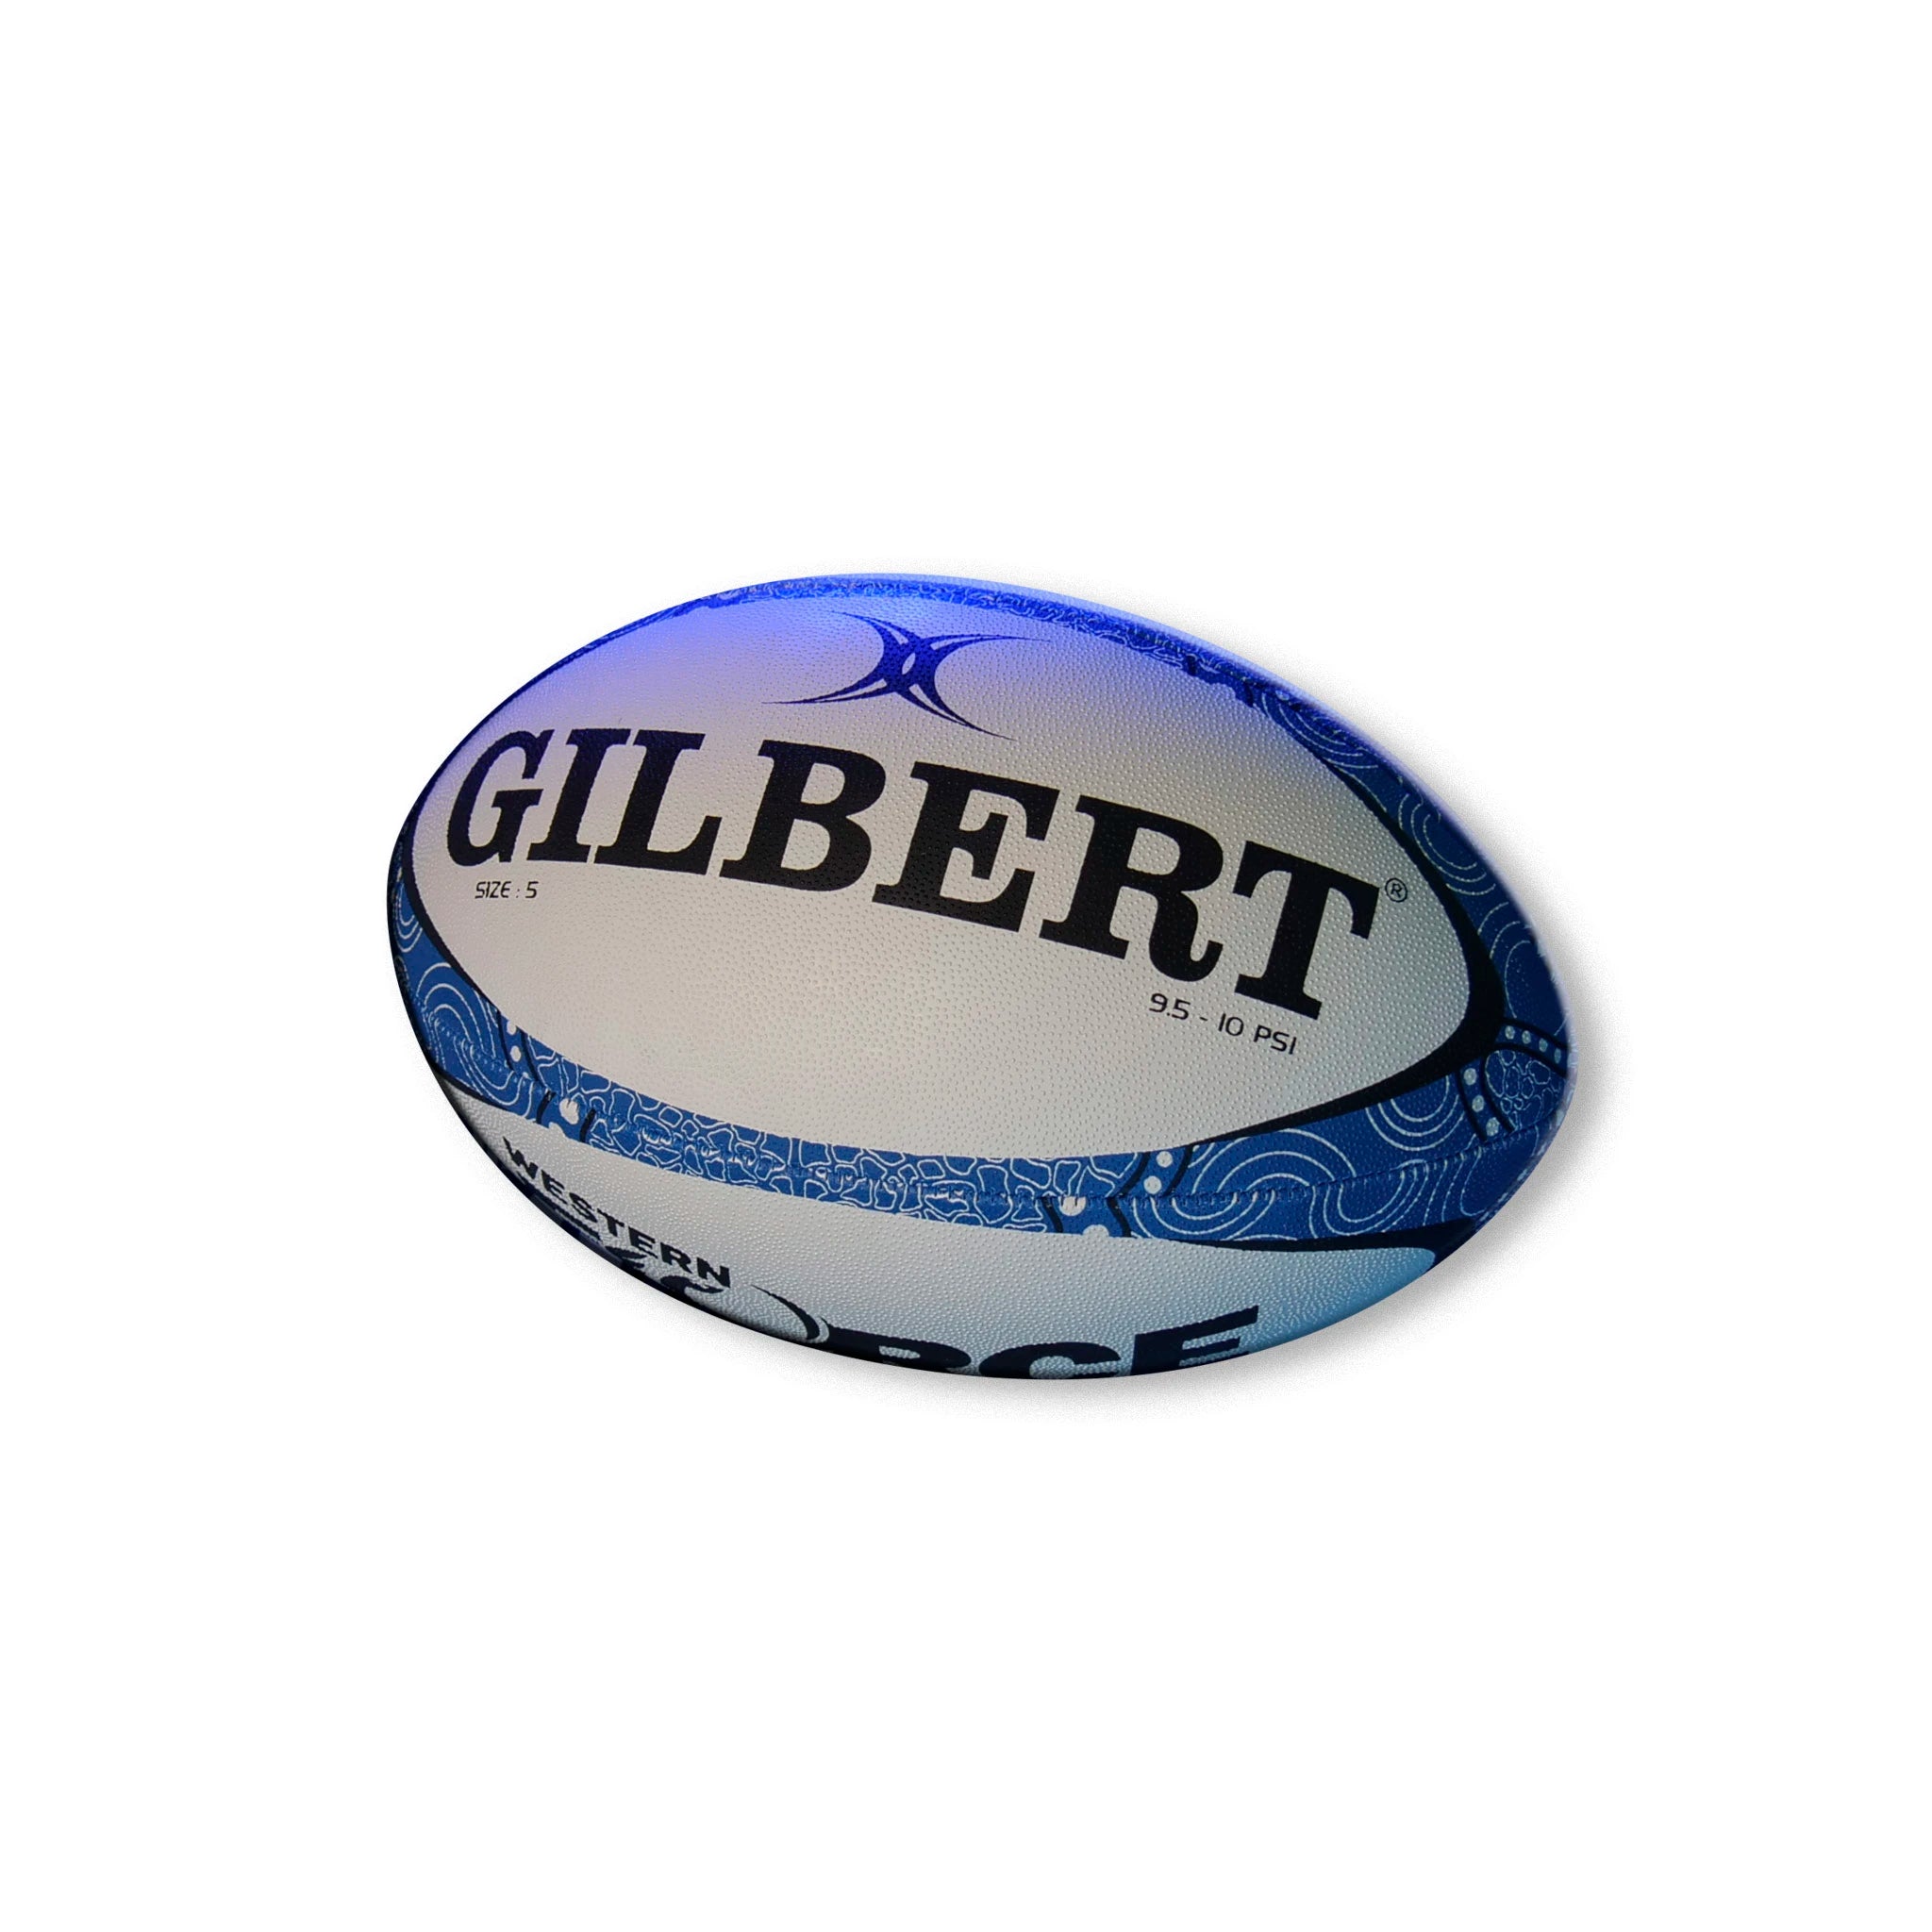 Rugby Ball - Gilbert